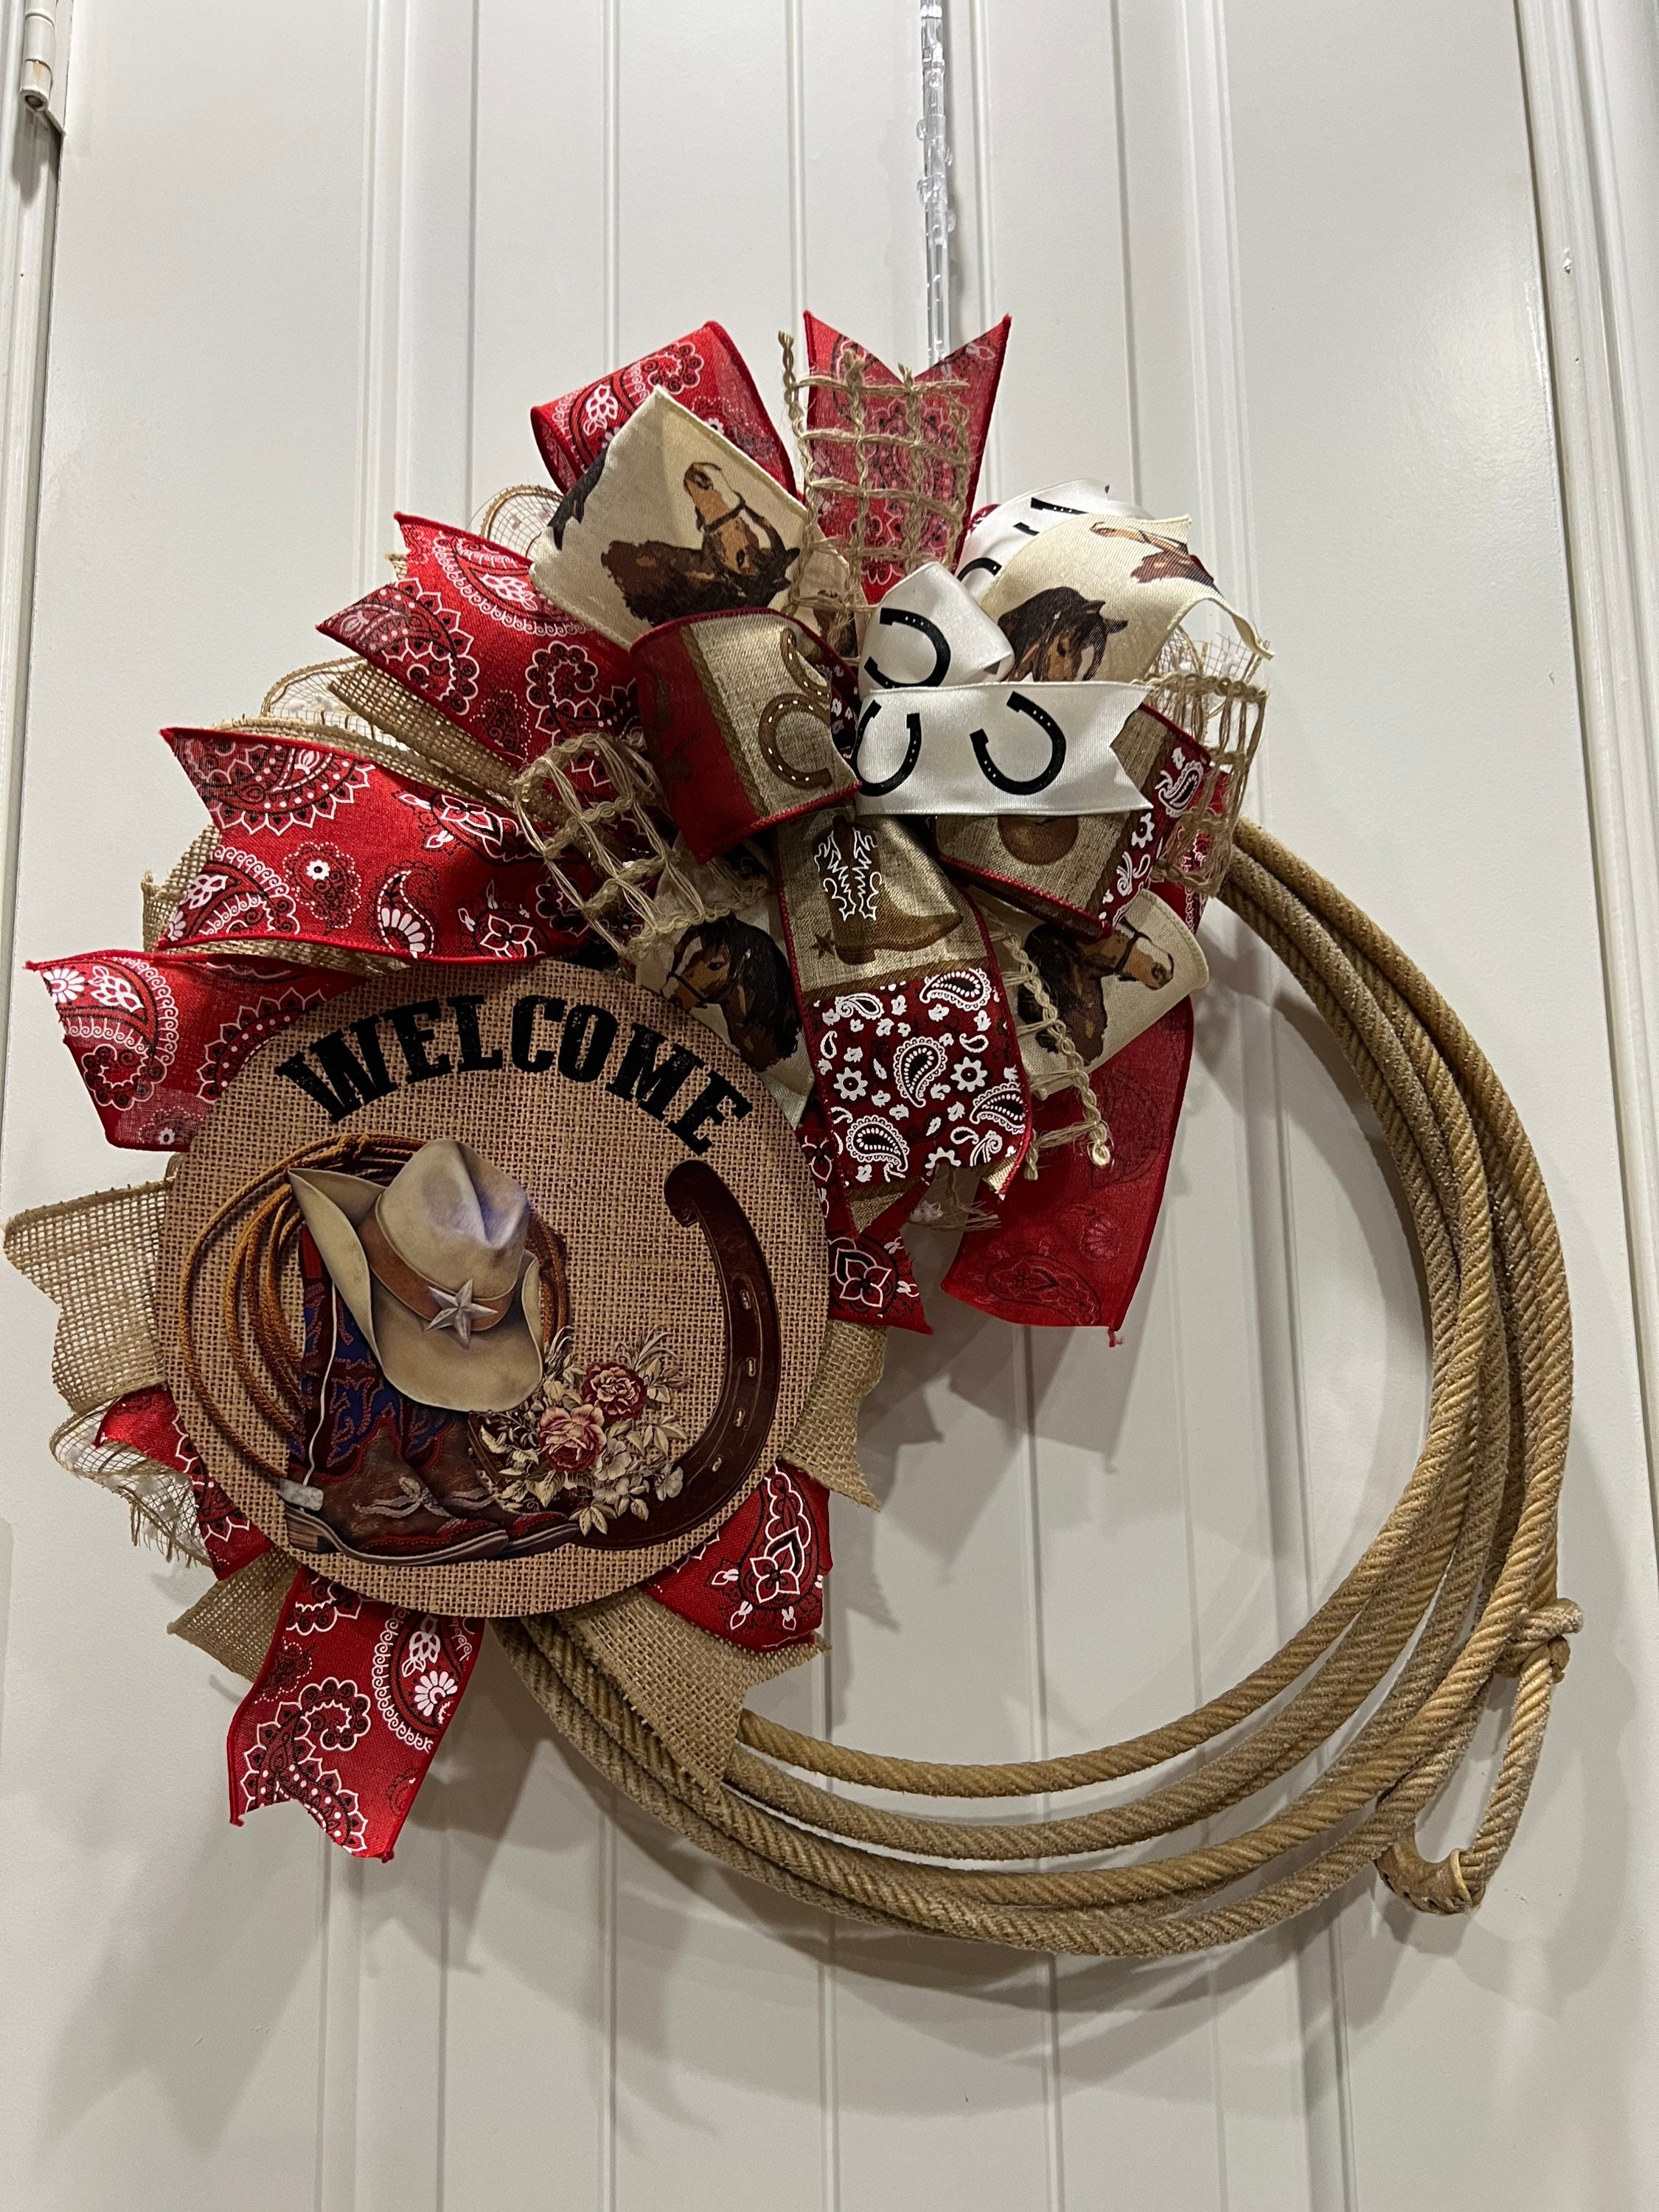 Lariat wreath/lasso wreath/rustic rope wreath/western decor/cowboy wreath/rustic  door decor/welcome door decor